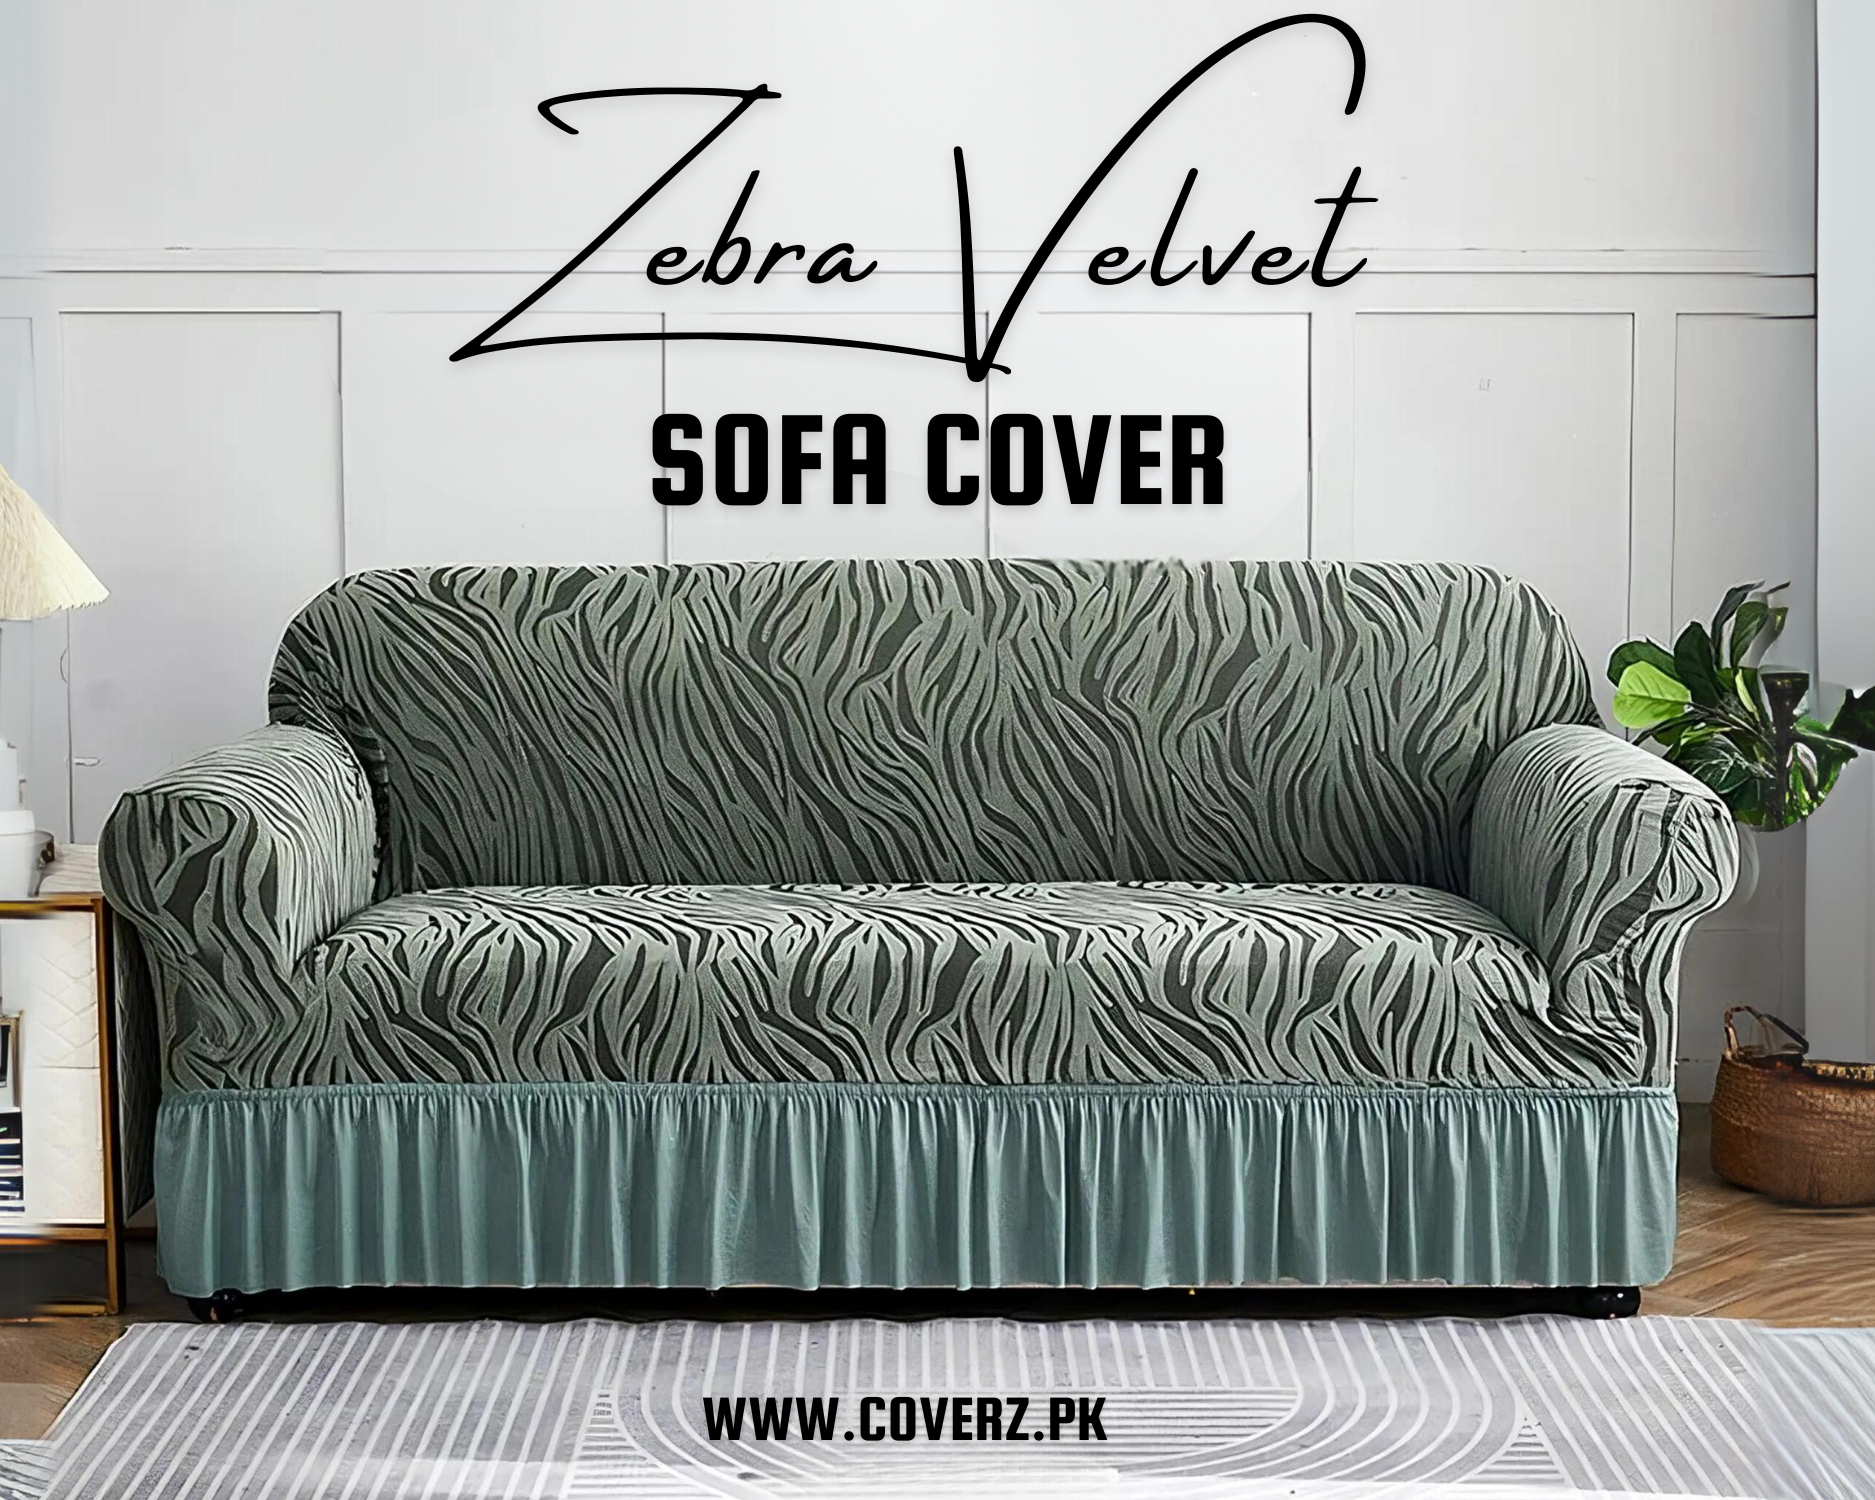 Zebra Velvet Turkish Style Sofa Cover All Colors